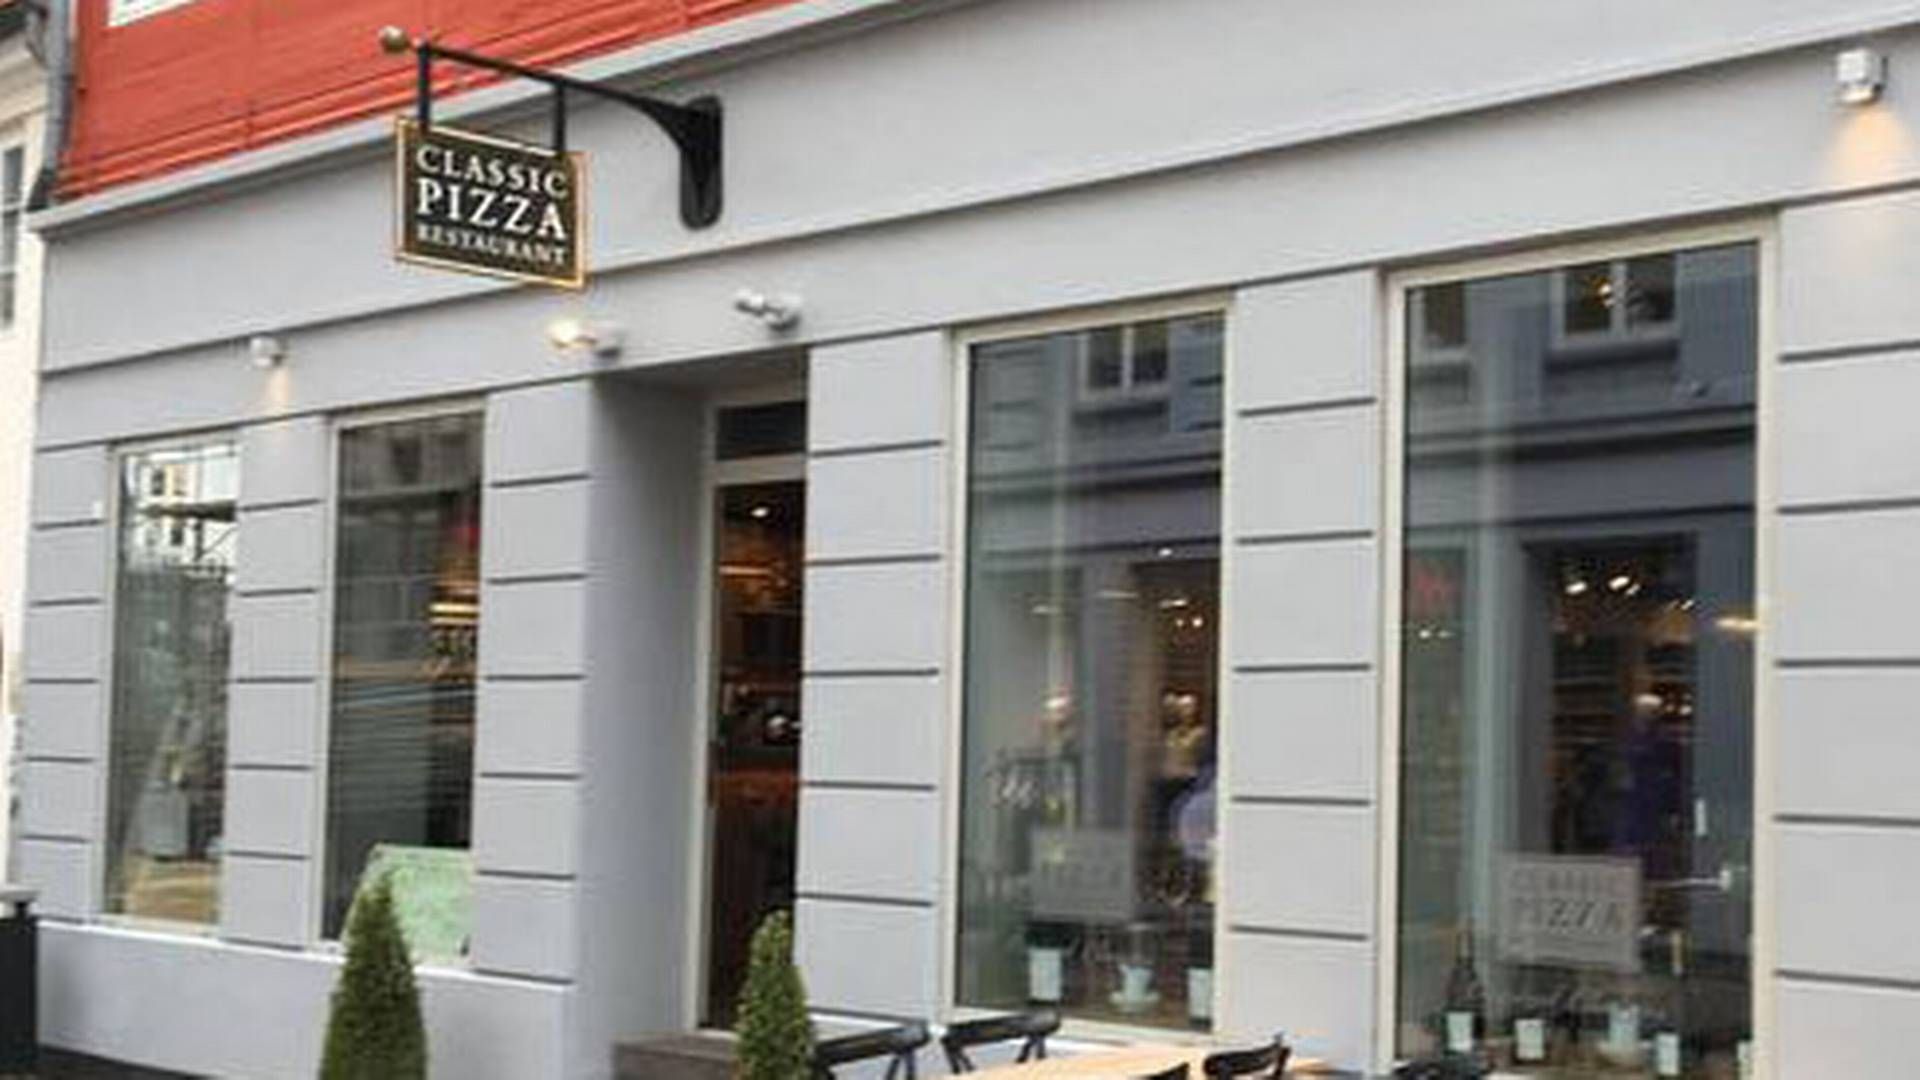 Classic Pizza er for nylig åbnet i Jacob BarBQ's tidligere lokaler i Aarhus ved siden af Magasin. Foto: Mick Kristensen